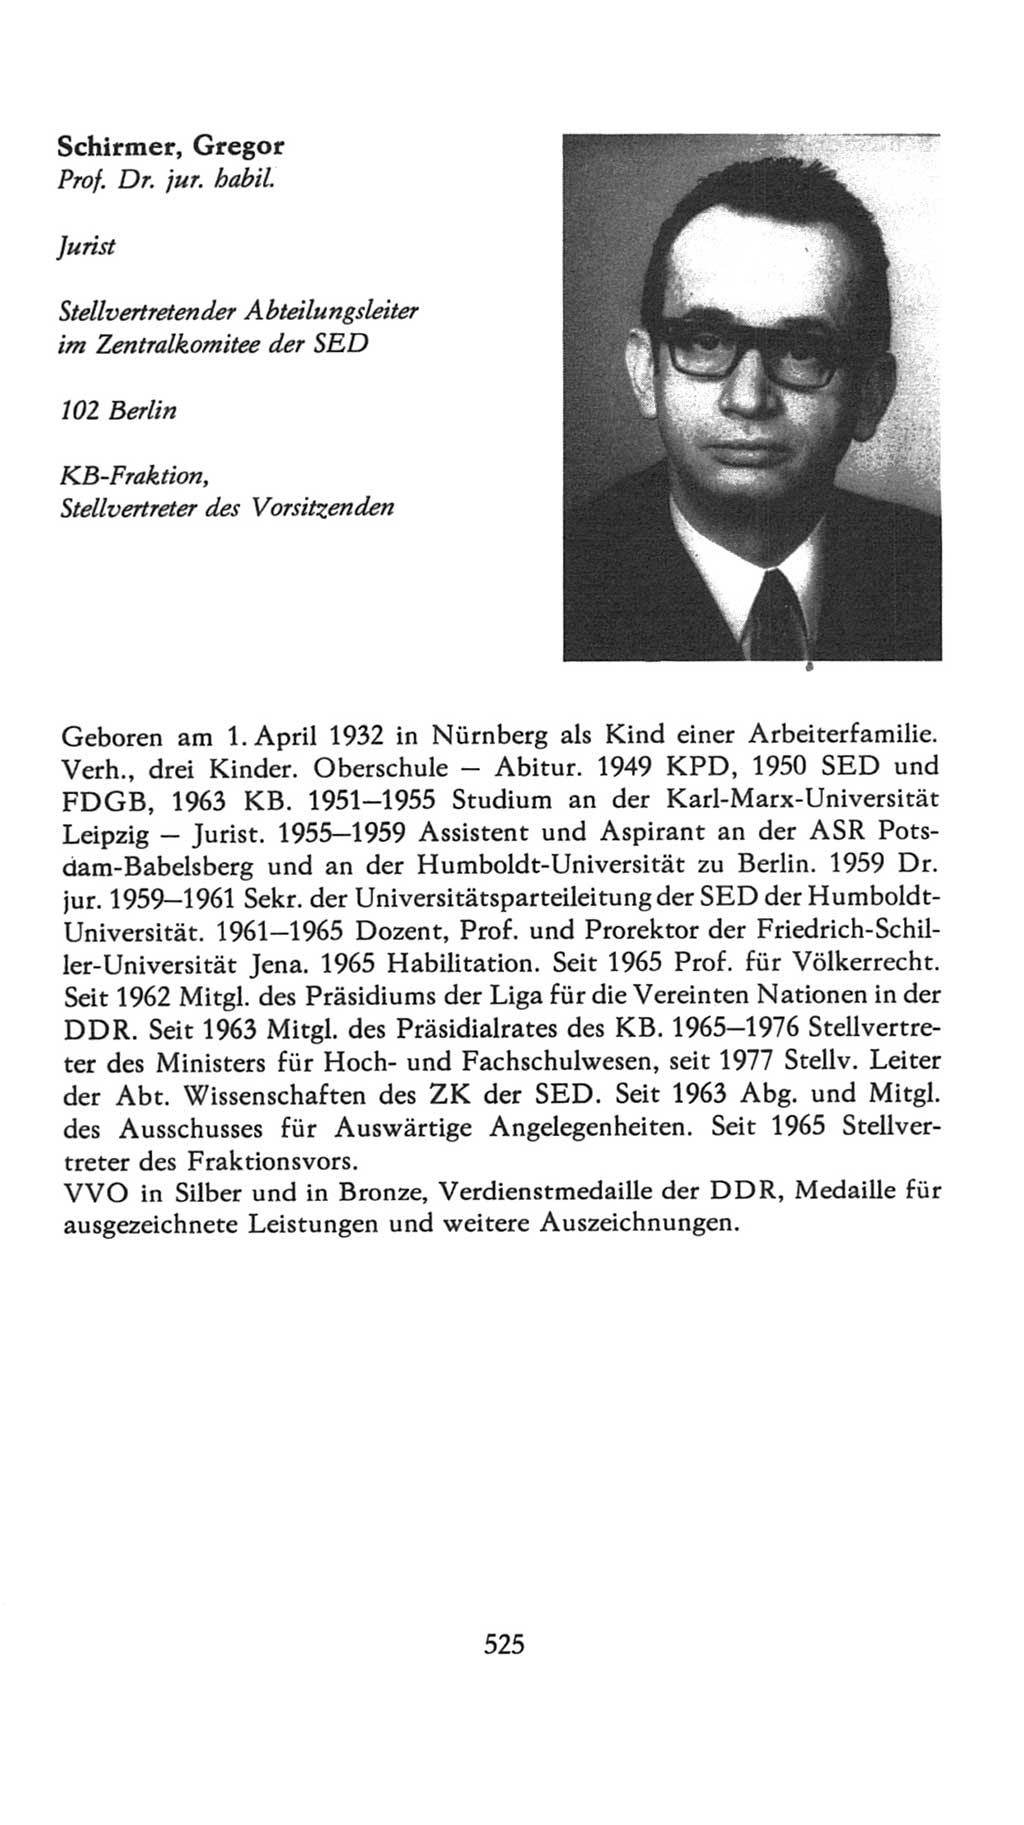 Volkskammer (VK) der Deutschen Demokratischen Republik (DDR), 7. Wahlperiode 1976-1981, Seite 525 (VK. DDR 7. WP. 1976-1981, S. 525)